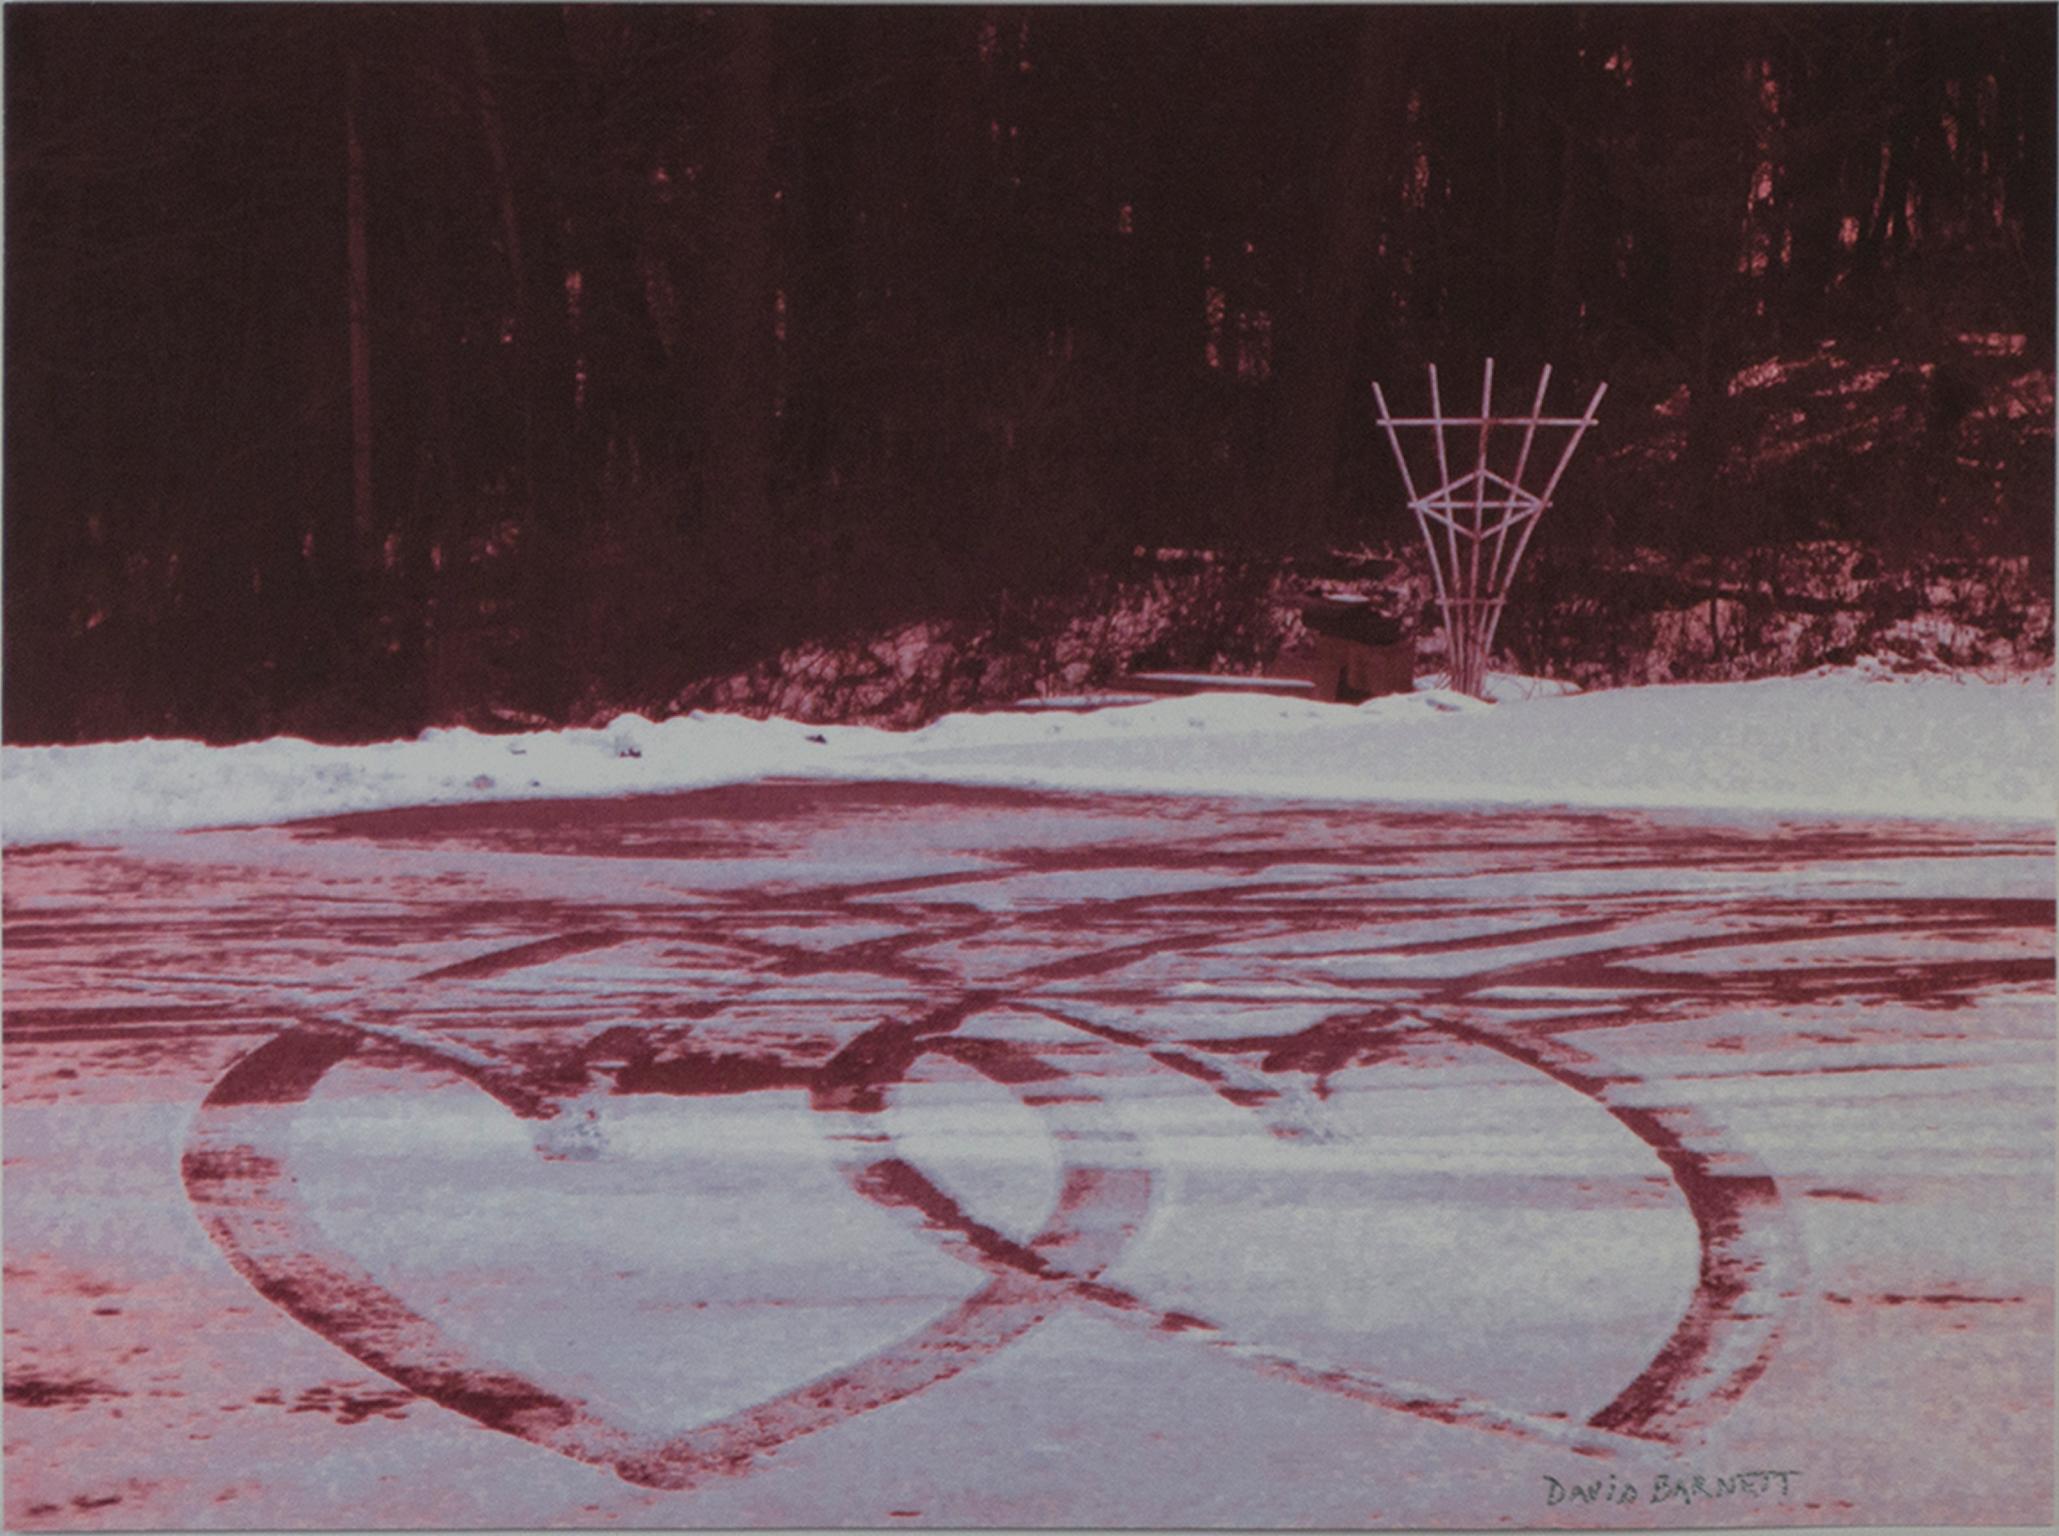 "Tracks of Love" ist eine Original-Fotografie von David Barnett, die in Schwarz-Weiß aufgenommen und rot eingefärbt wurde. Es ist in der rechten unteren Ecke signiert. Es zeigt einen zugefrorenen See mit Schlittschuhspuren, die zwei sich drehende